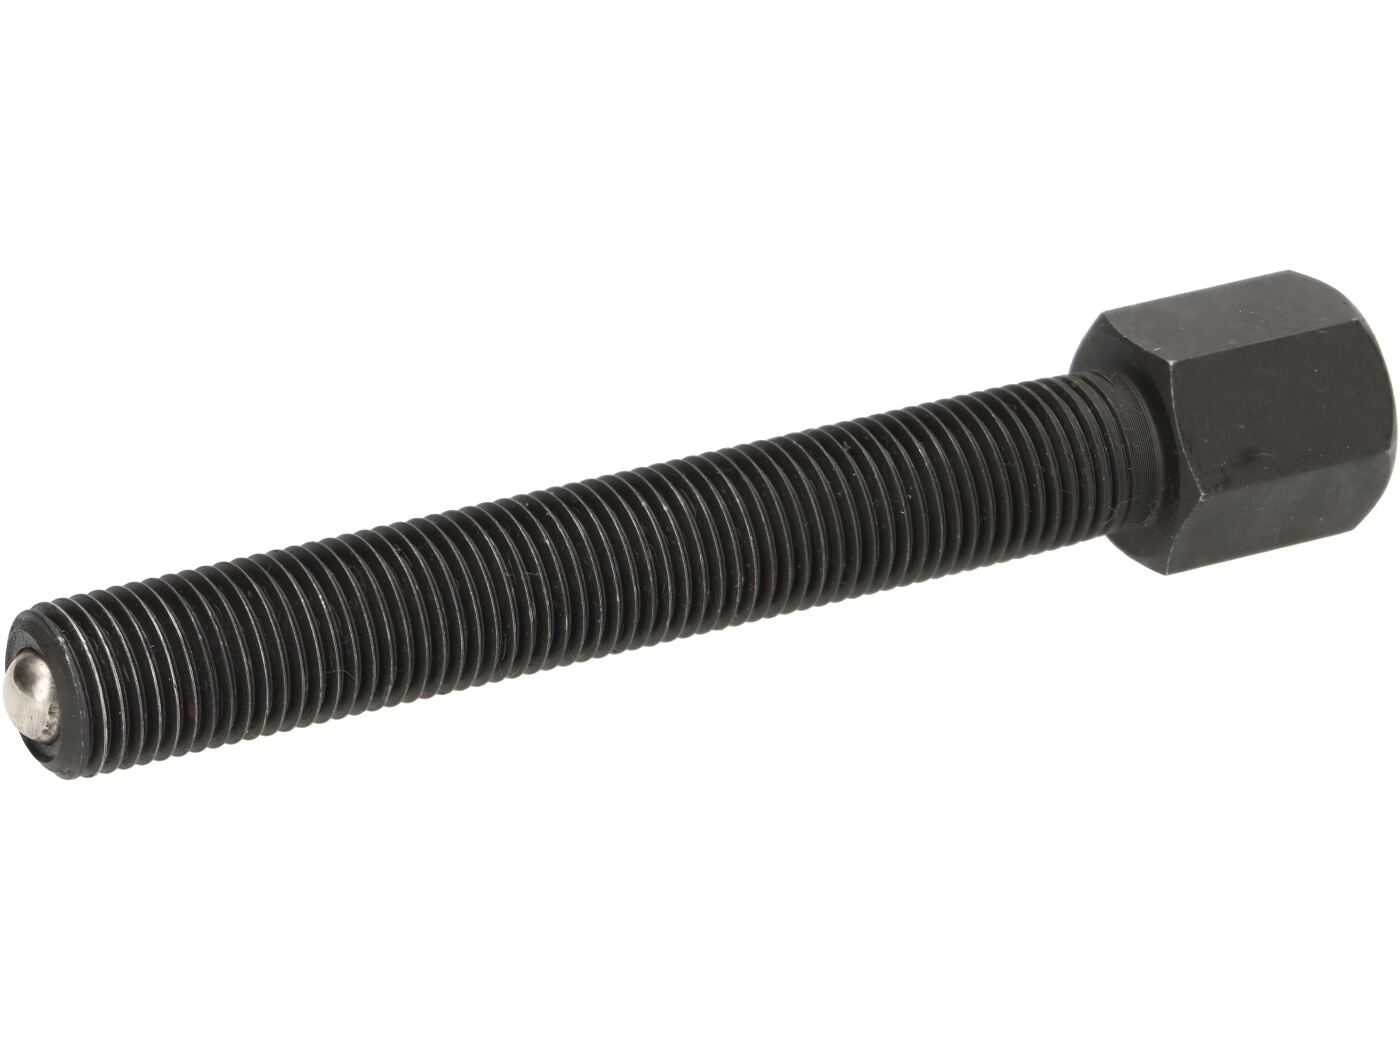 Schraube M14x1.5, l=95mm für Abzieher und Demontagewekzeuge -BGM PRO-,